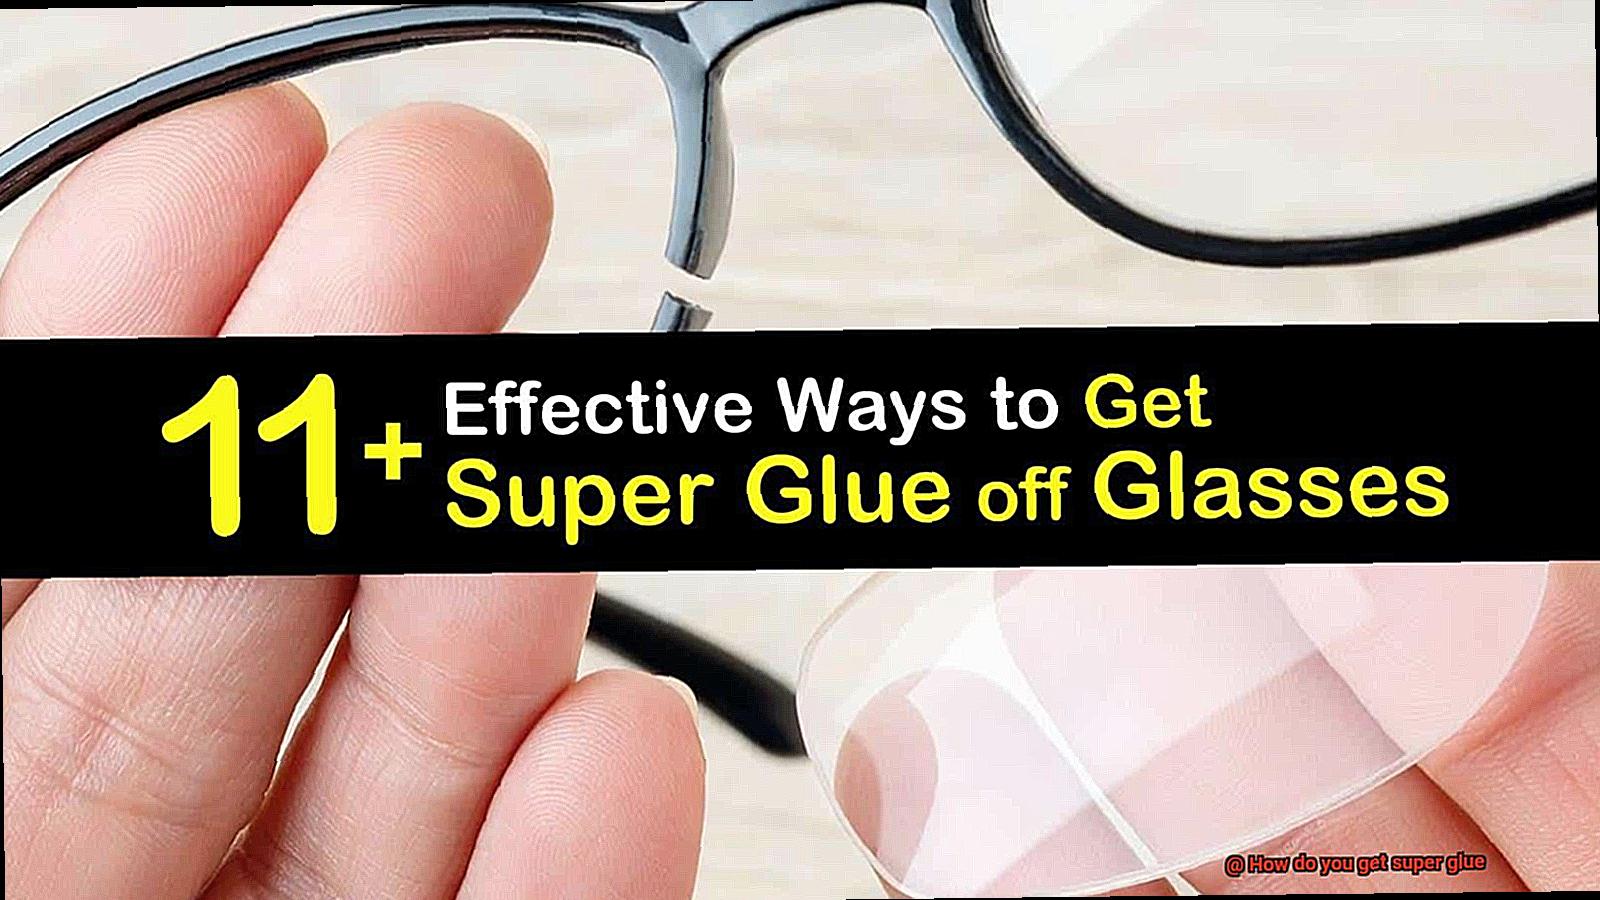 How do you get super glue-7